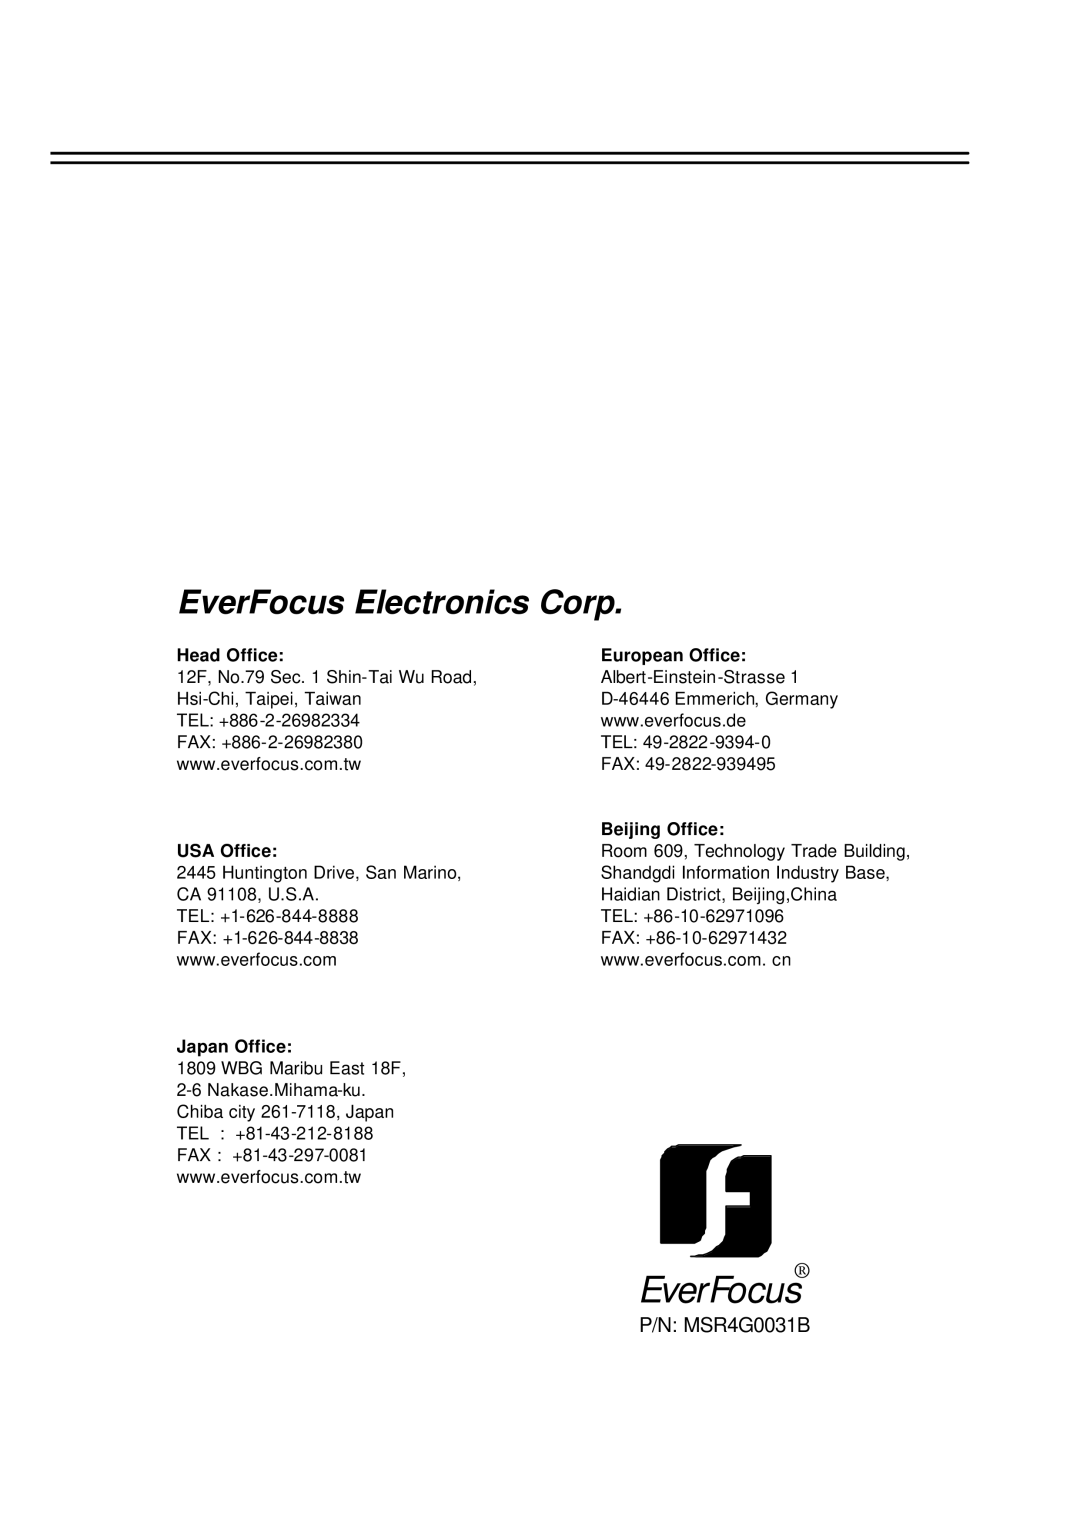 EverFocus EDSR-600, EDSR-400 EverFocus Electronics Corp, P/N MSR4G0031B, Head Office, European Office, Beijing Office 